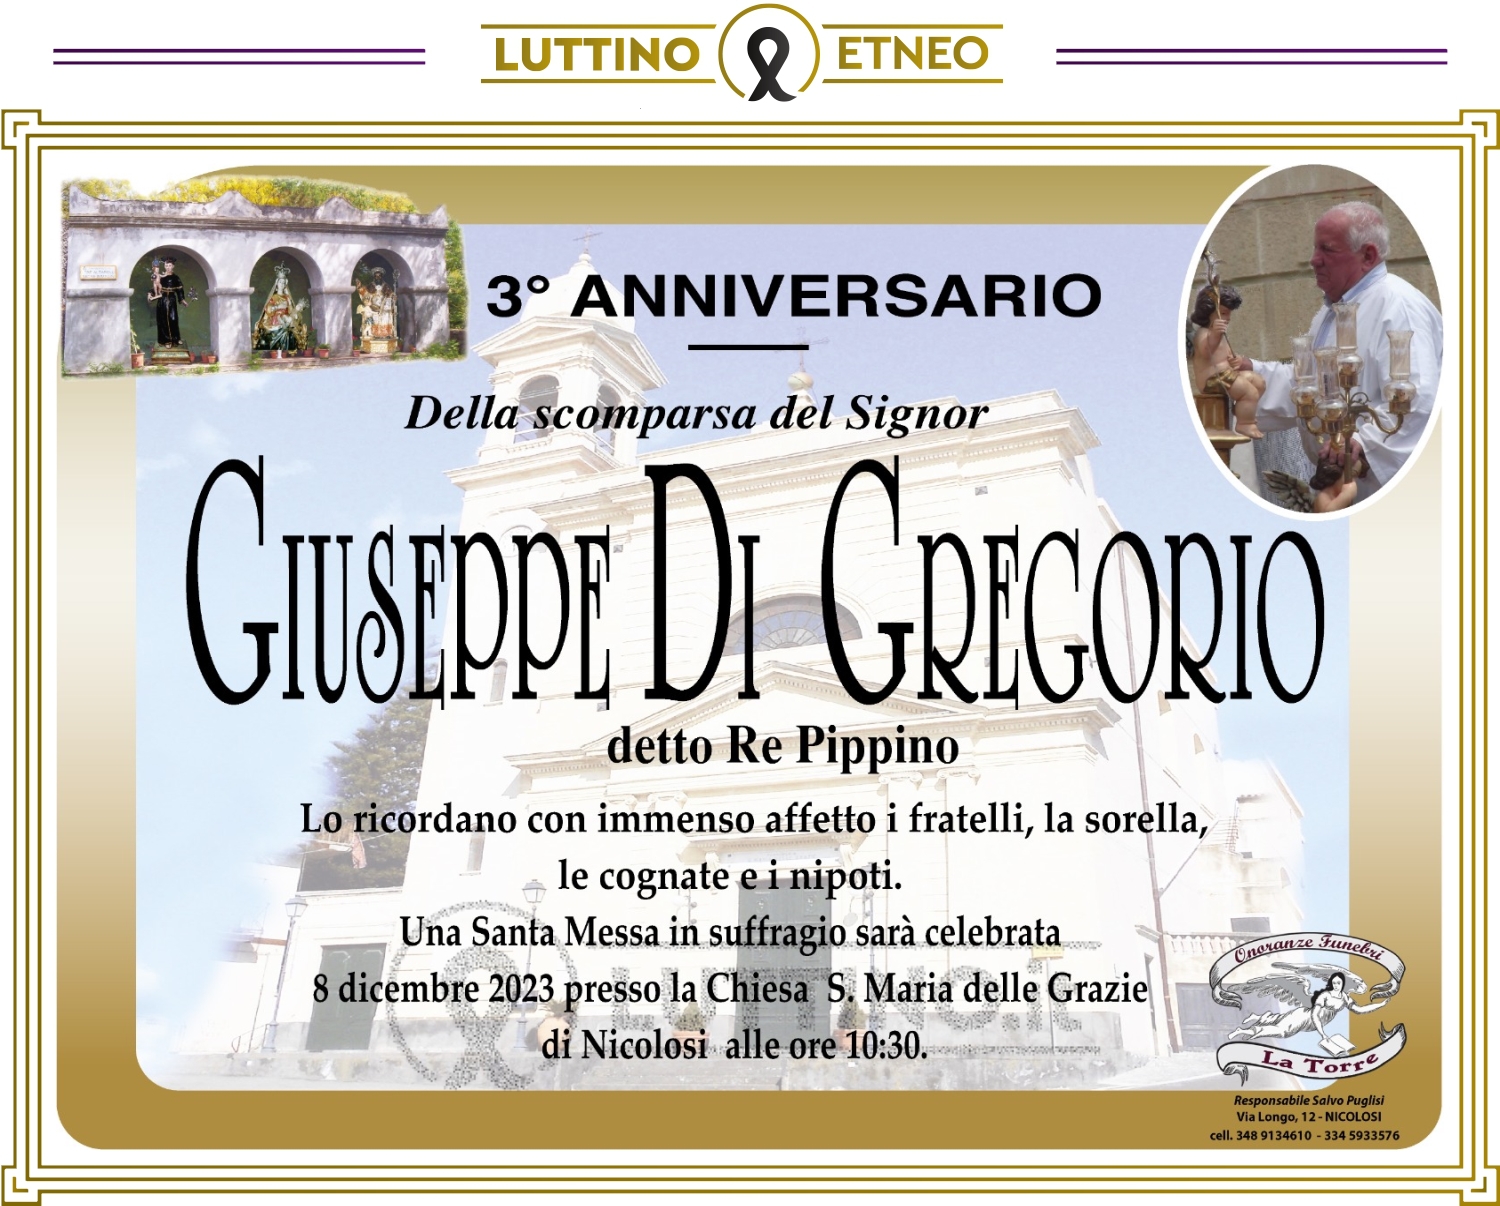 Giuseppe Di Gregorio